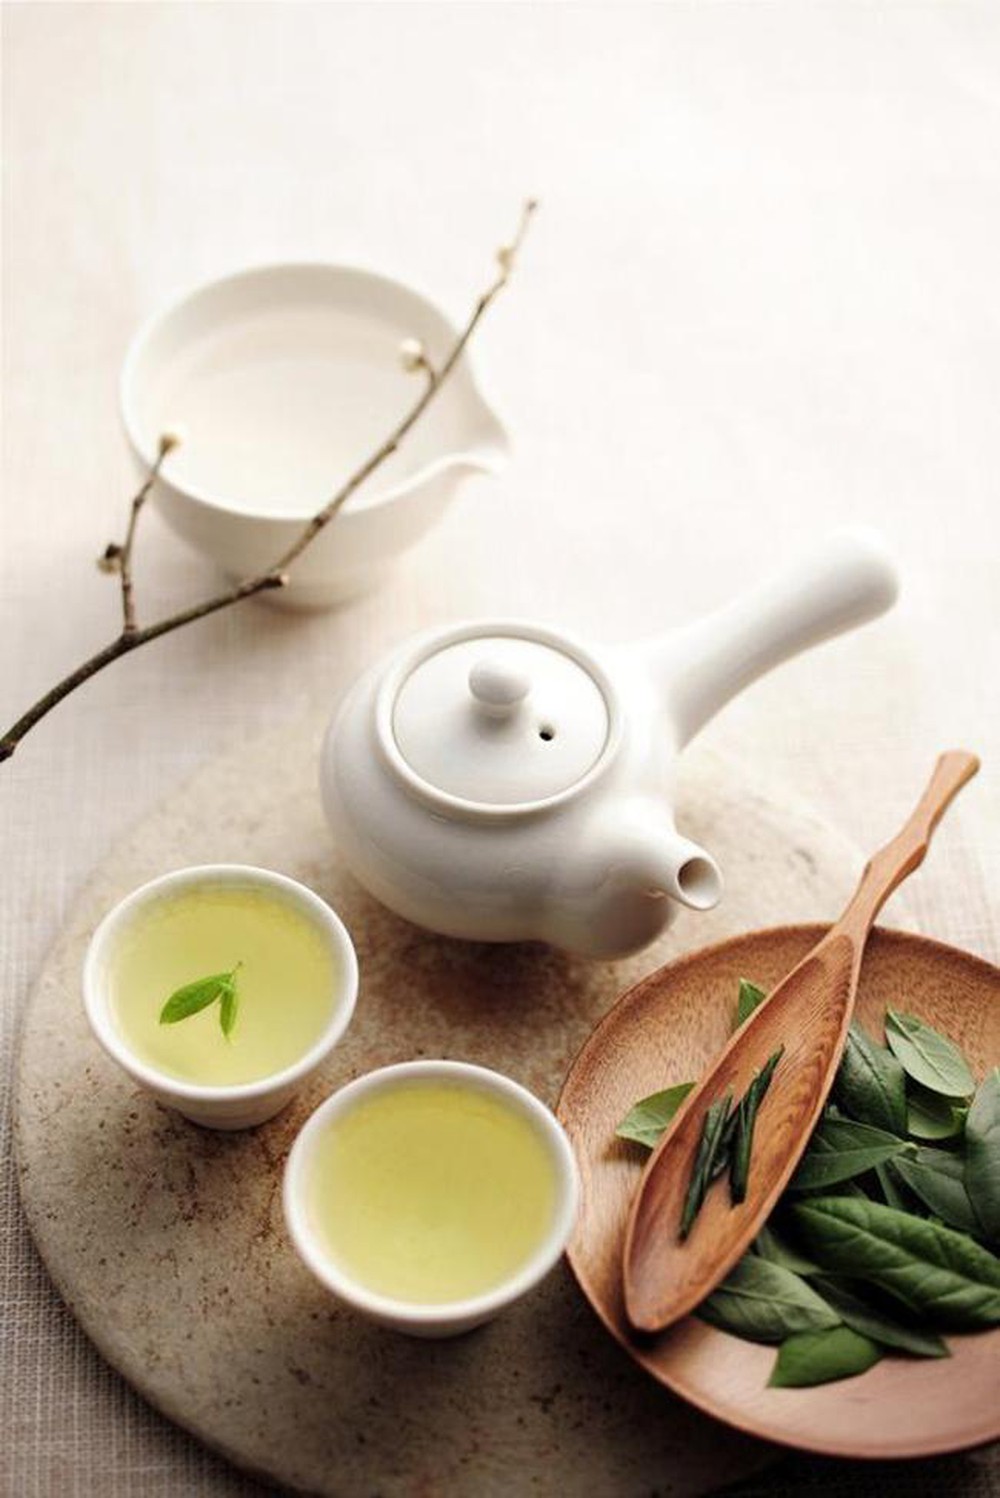 Lá trà từ lâu luôn được xem là “thần dược” rất tốt cho cơ thể, ngoài ra còn rất có ích trong việc làm đẹp của phái nữ.